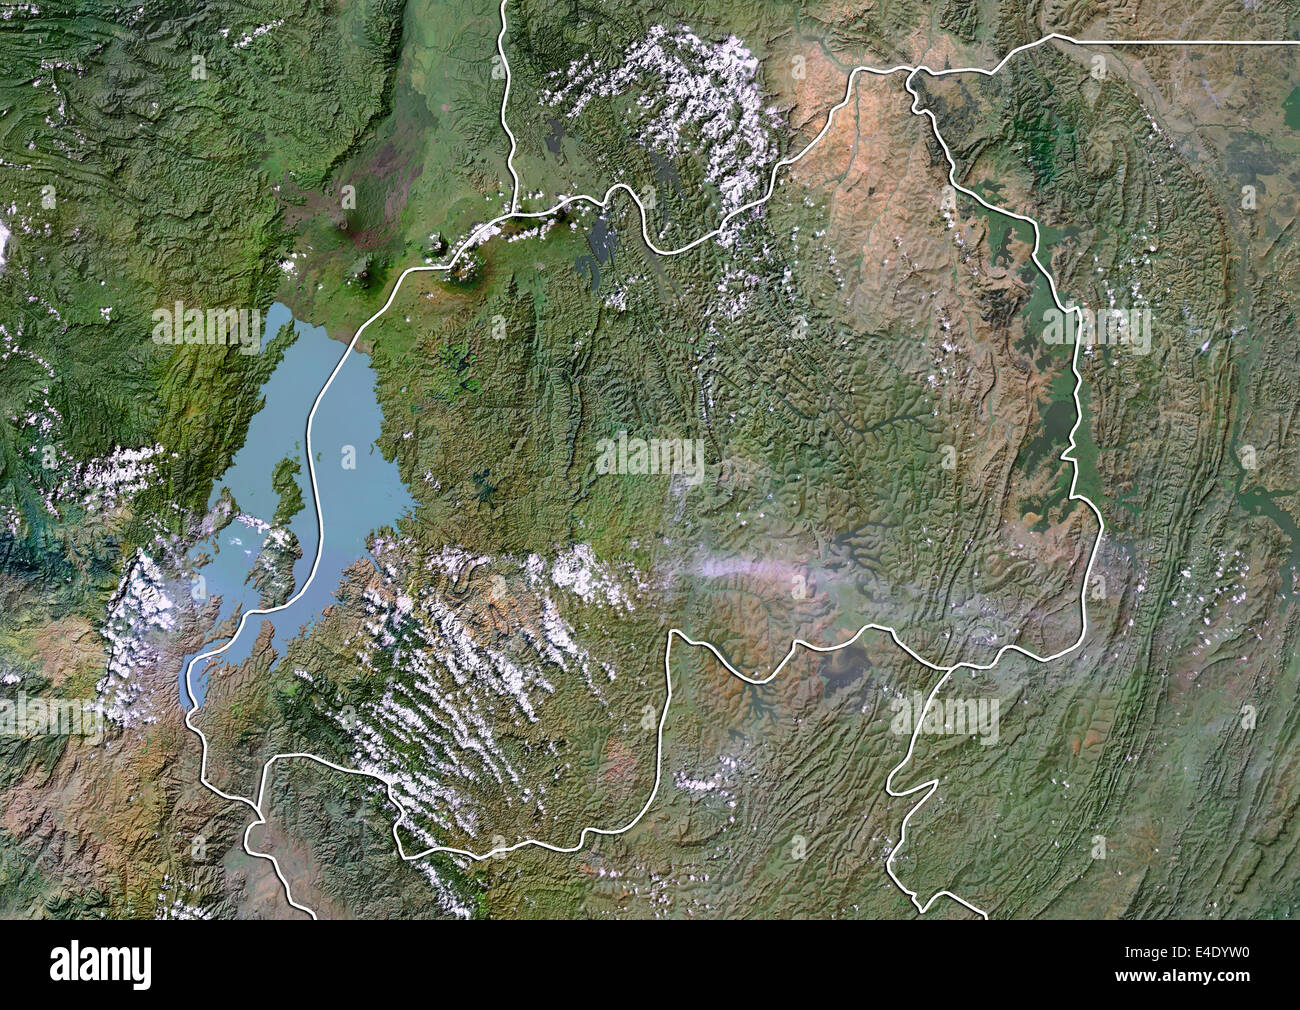 Le Rwanda, image satellite avec effet de choc, avec bordure Banque D'Images